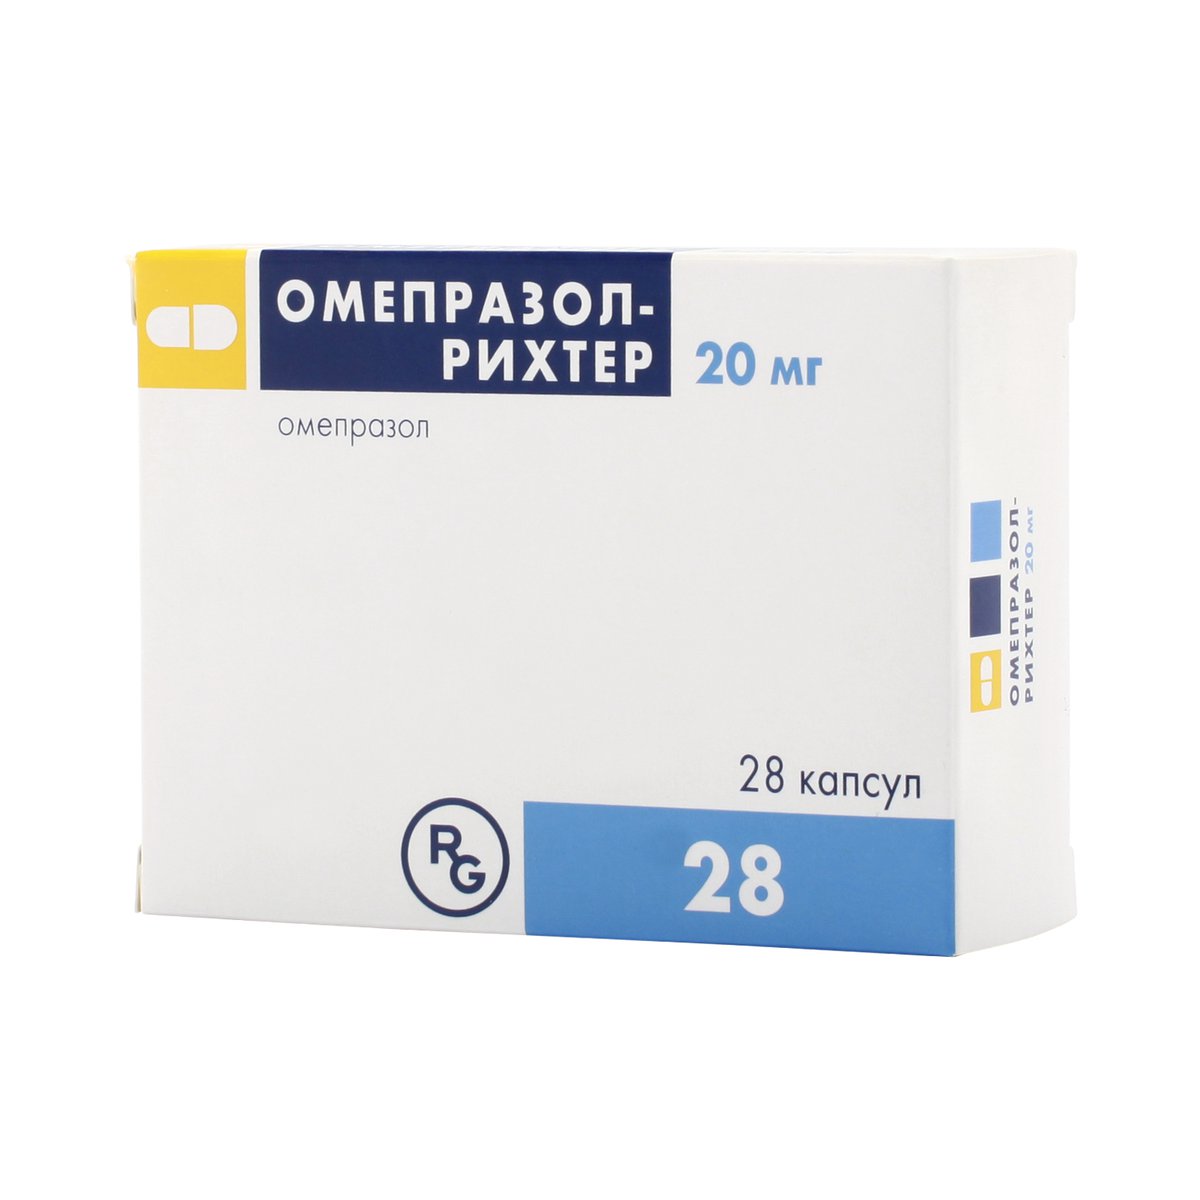 Омепразол-рихтер (капсулы, 28 шт, 20 мг) - цена,  онлайн  .